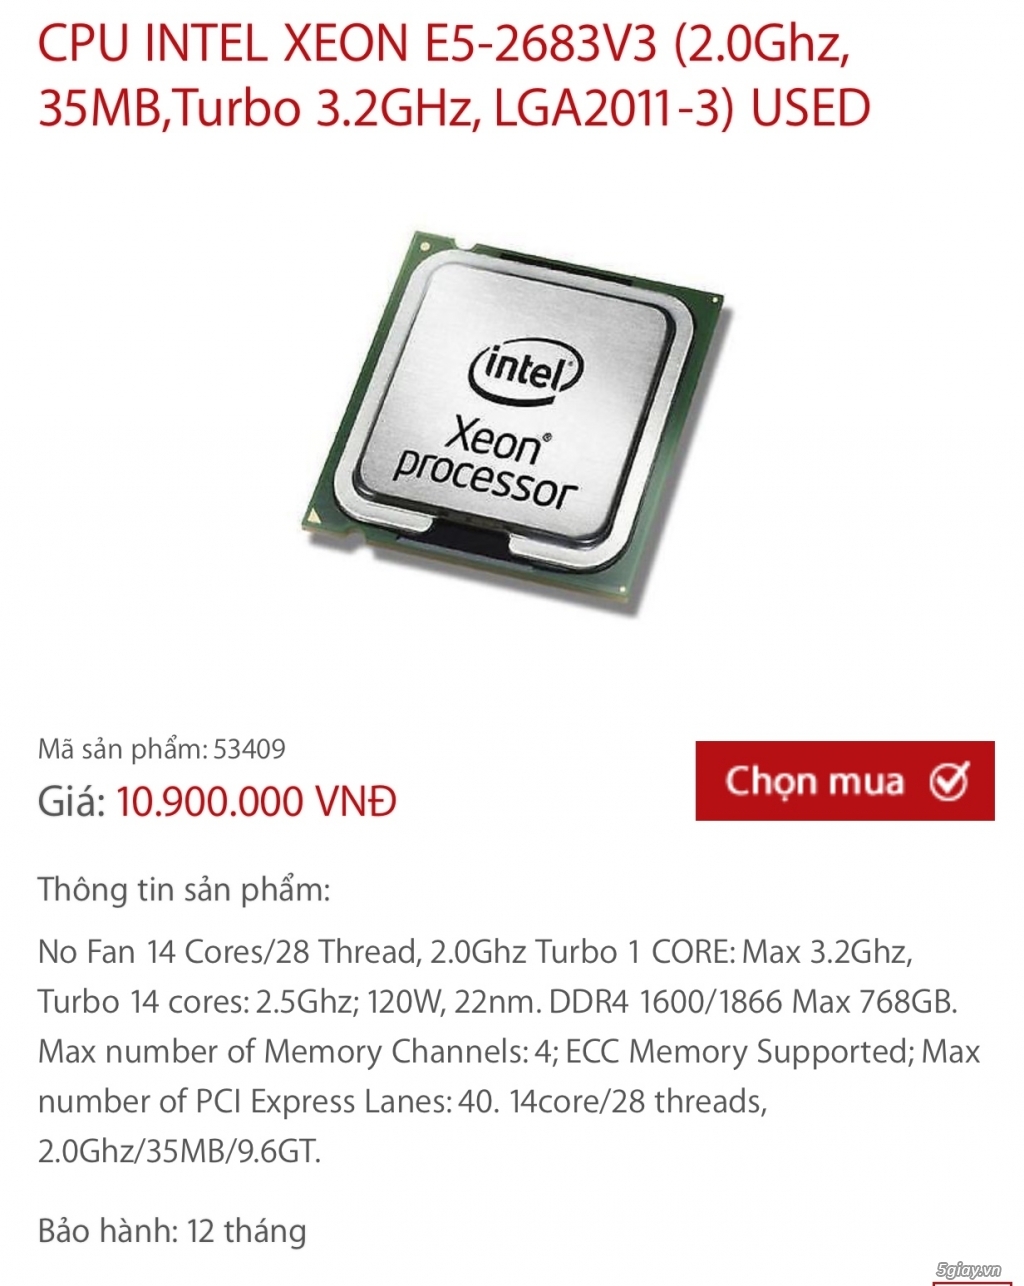 ĐÀ NẴNG - CPU Xeon E5 2683v3 và Main MSI X99A Sli plus | 5giay